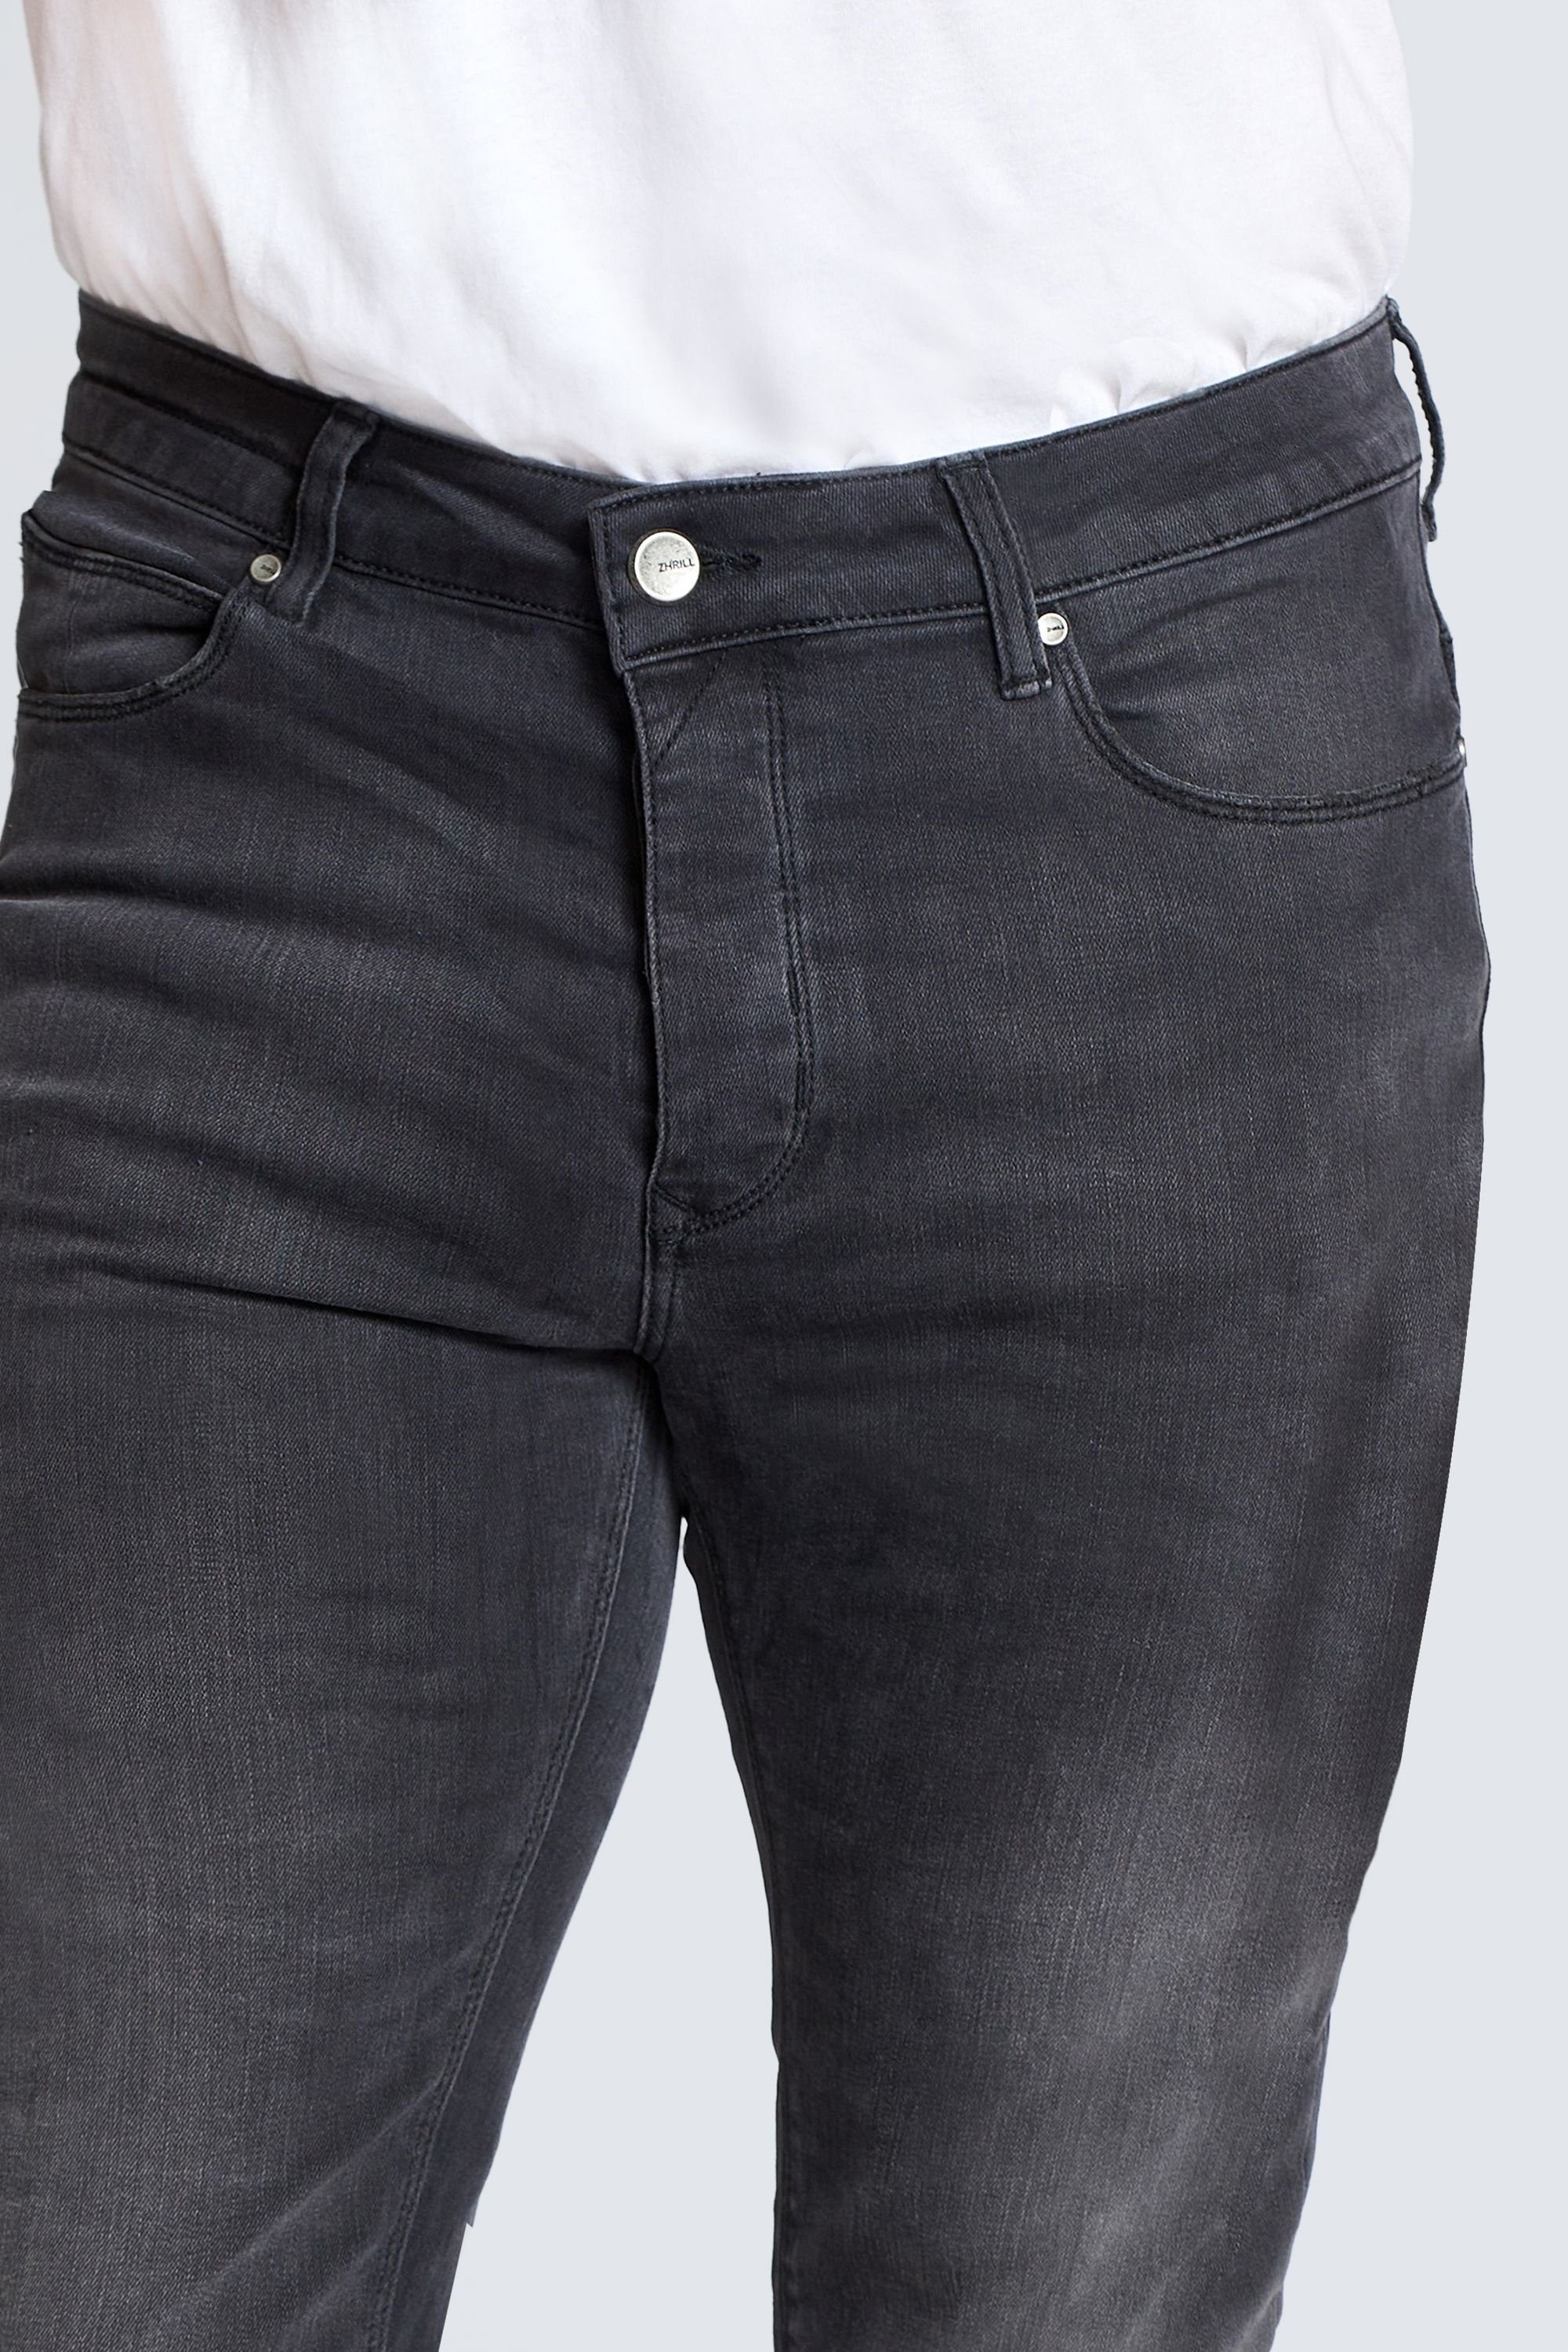 Black Zhrill angenehmer 5-Pocket-Jeans Tragekomfort JACK Jeans